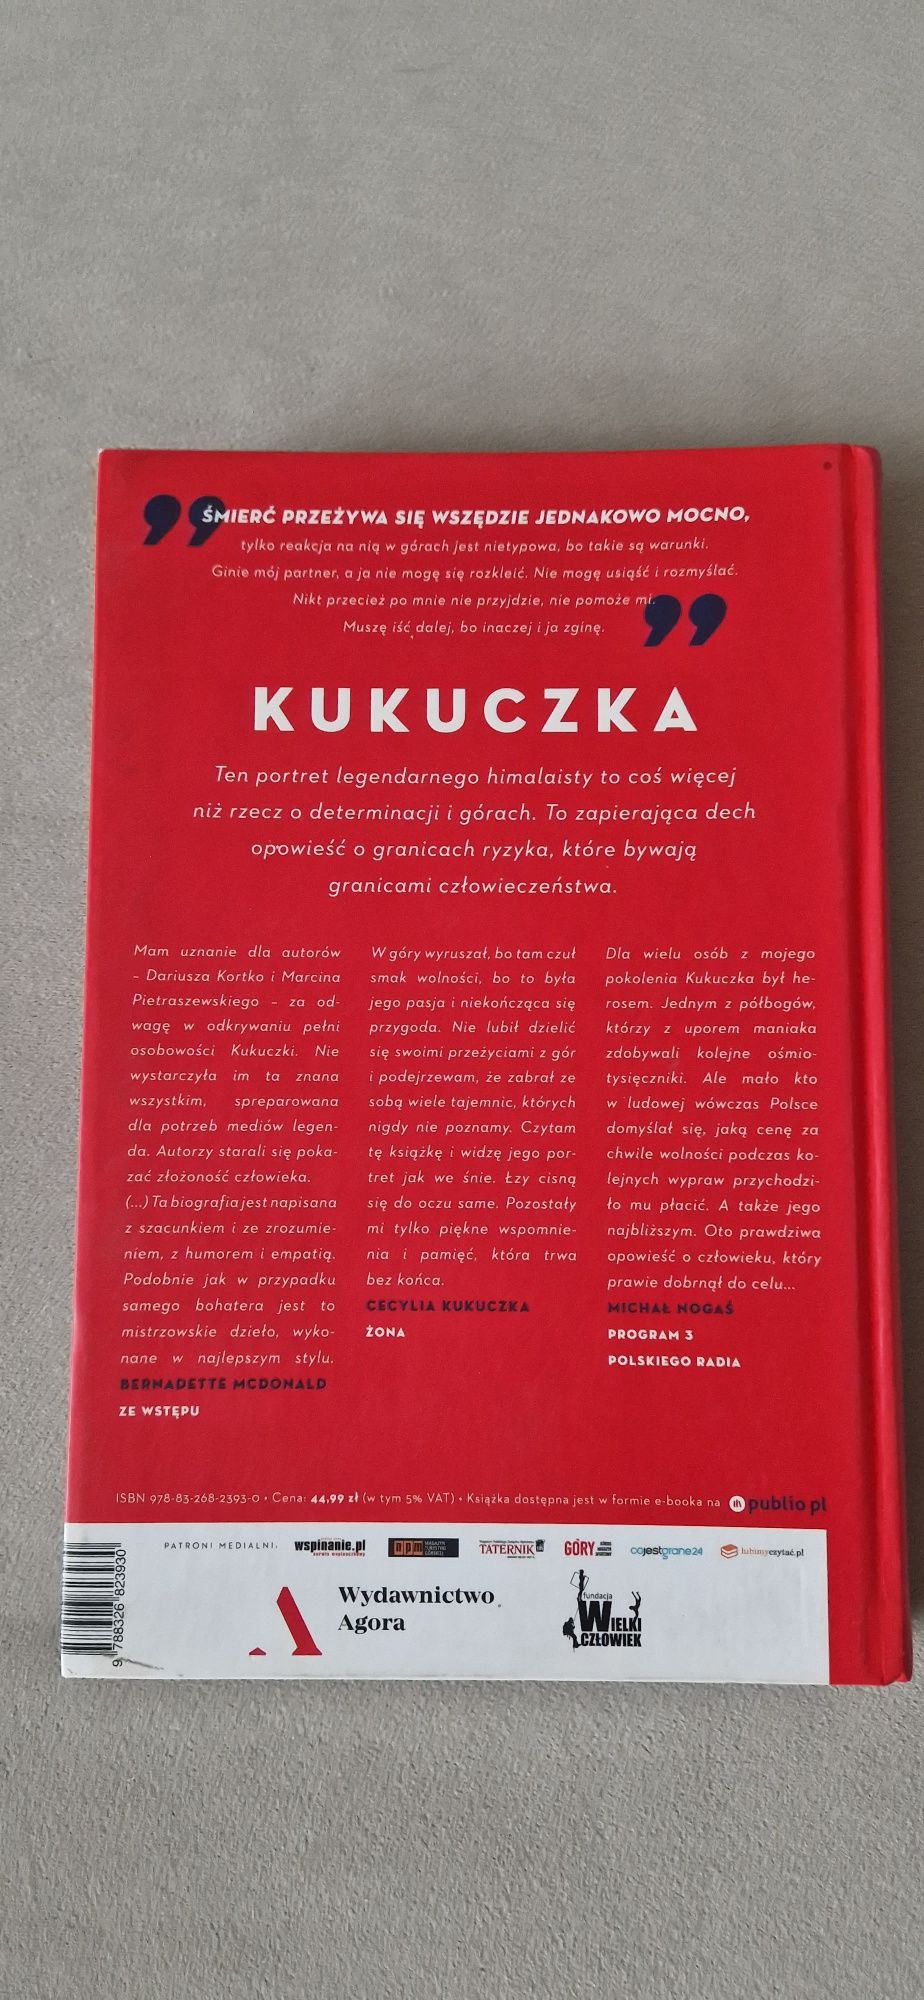 Kukuczka Dariusz krótko Marcin pietraszewski